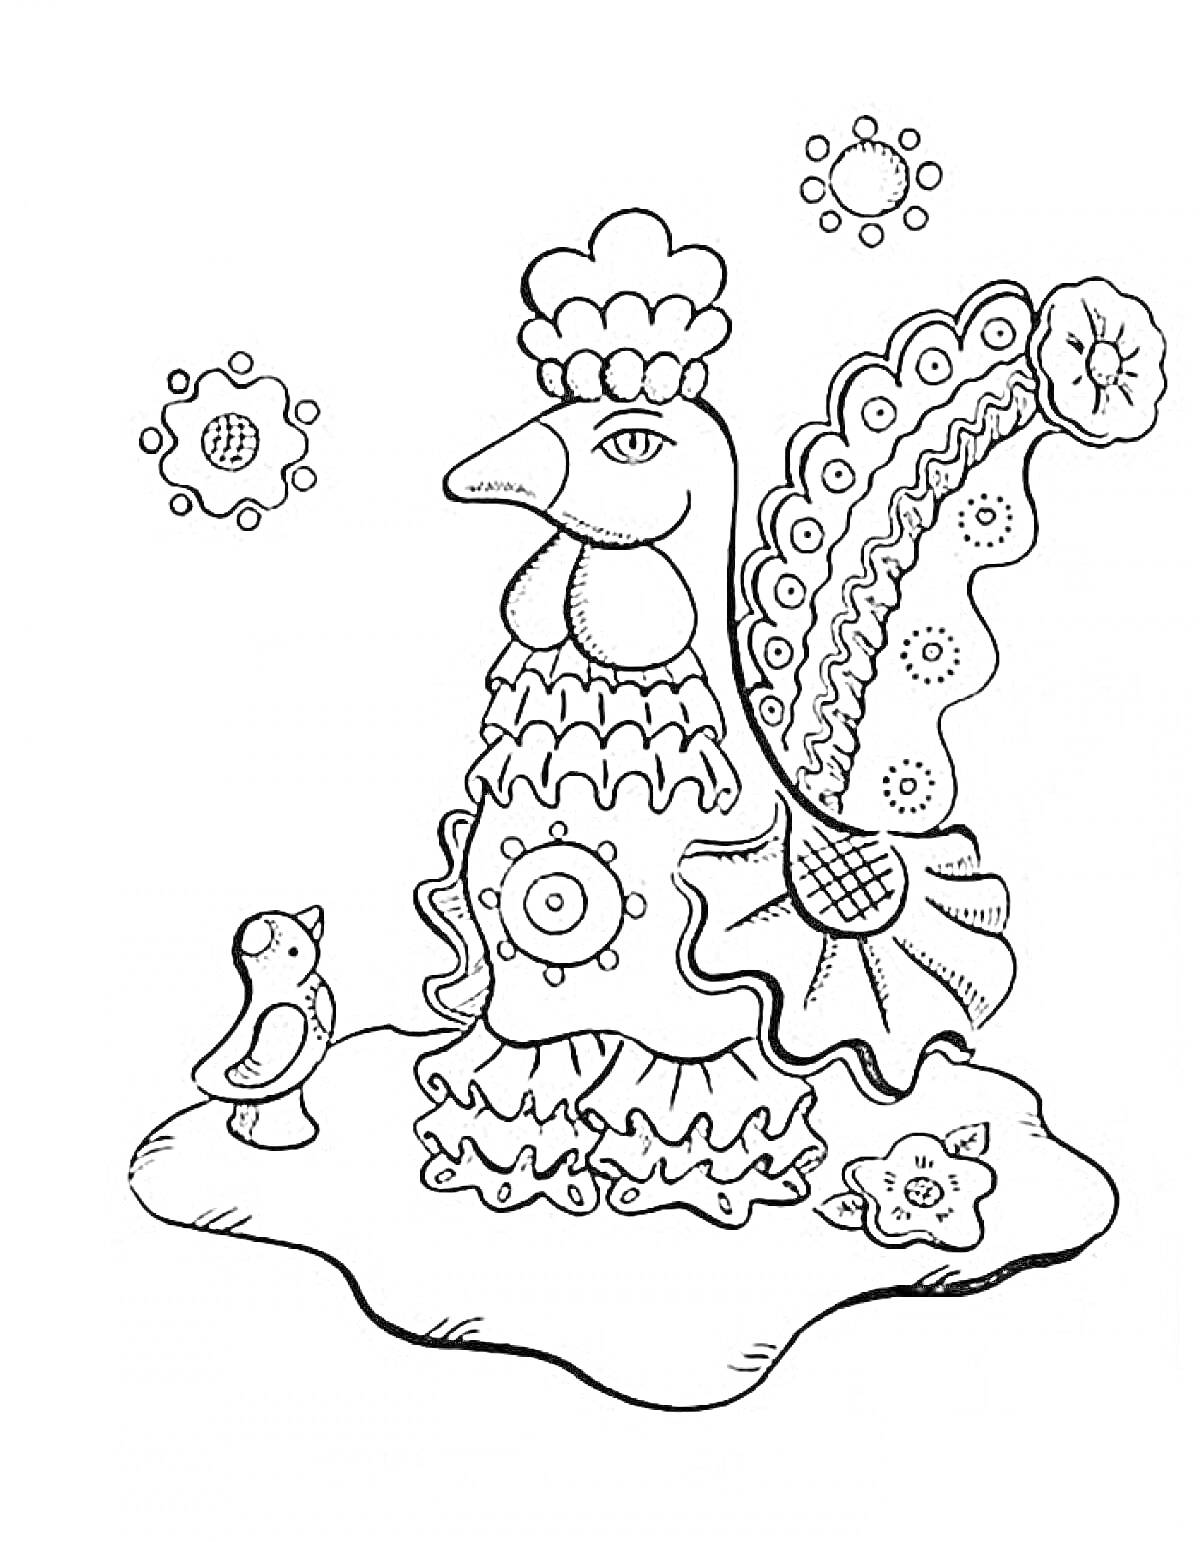 Петух с курочкой и цветами на земле в стиле дымковской игрушки